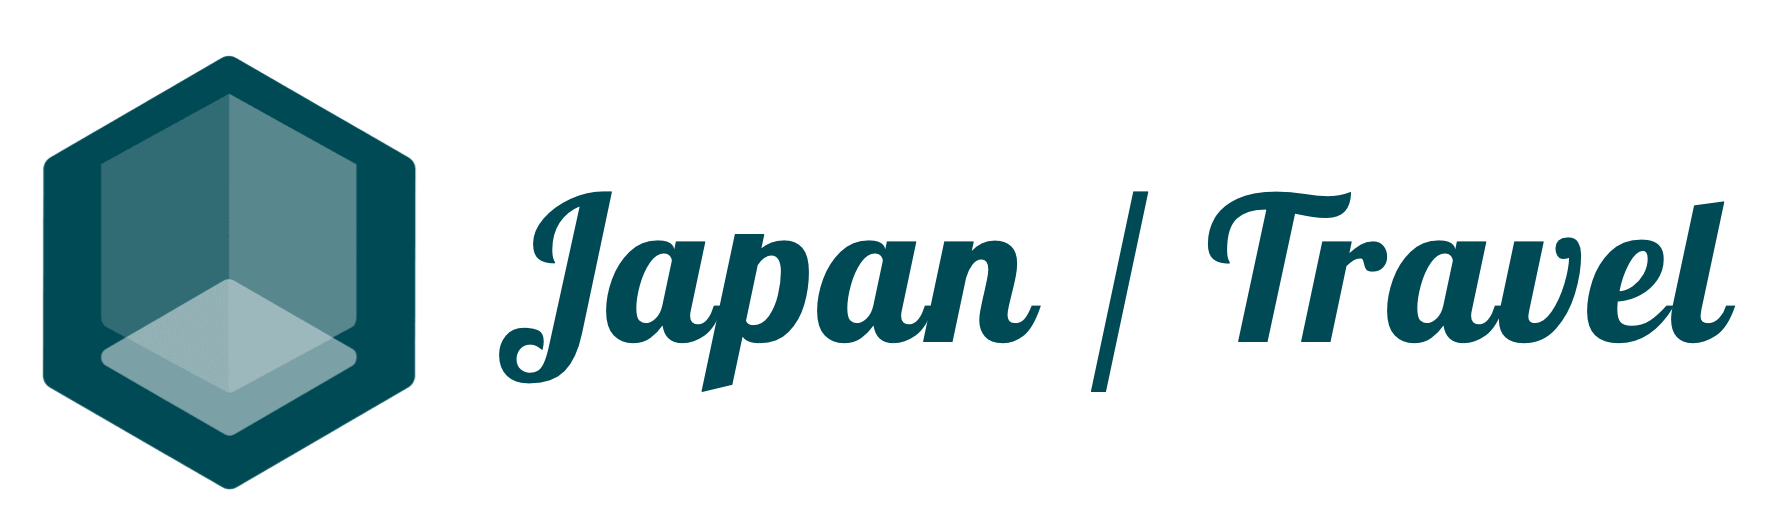 일본/ 일본기업/ 여행 정보